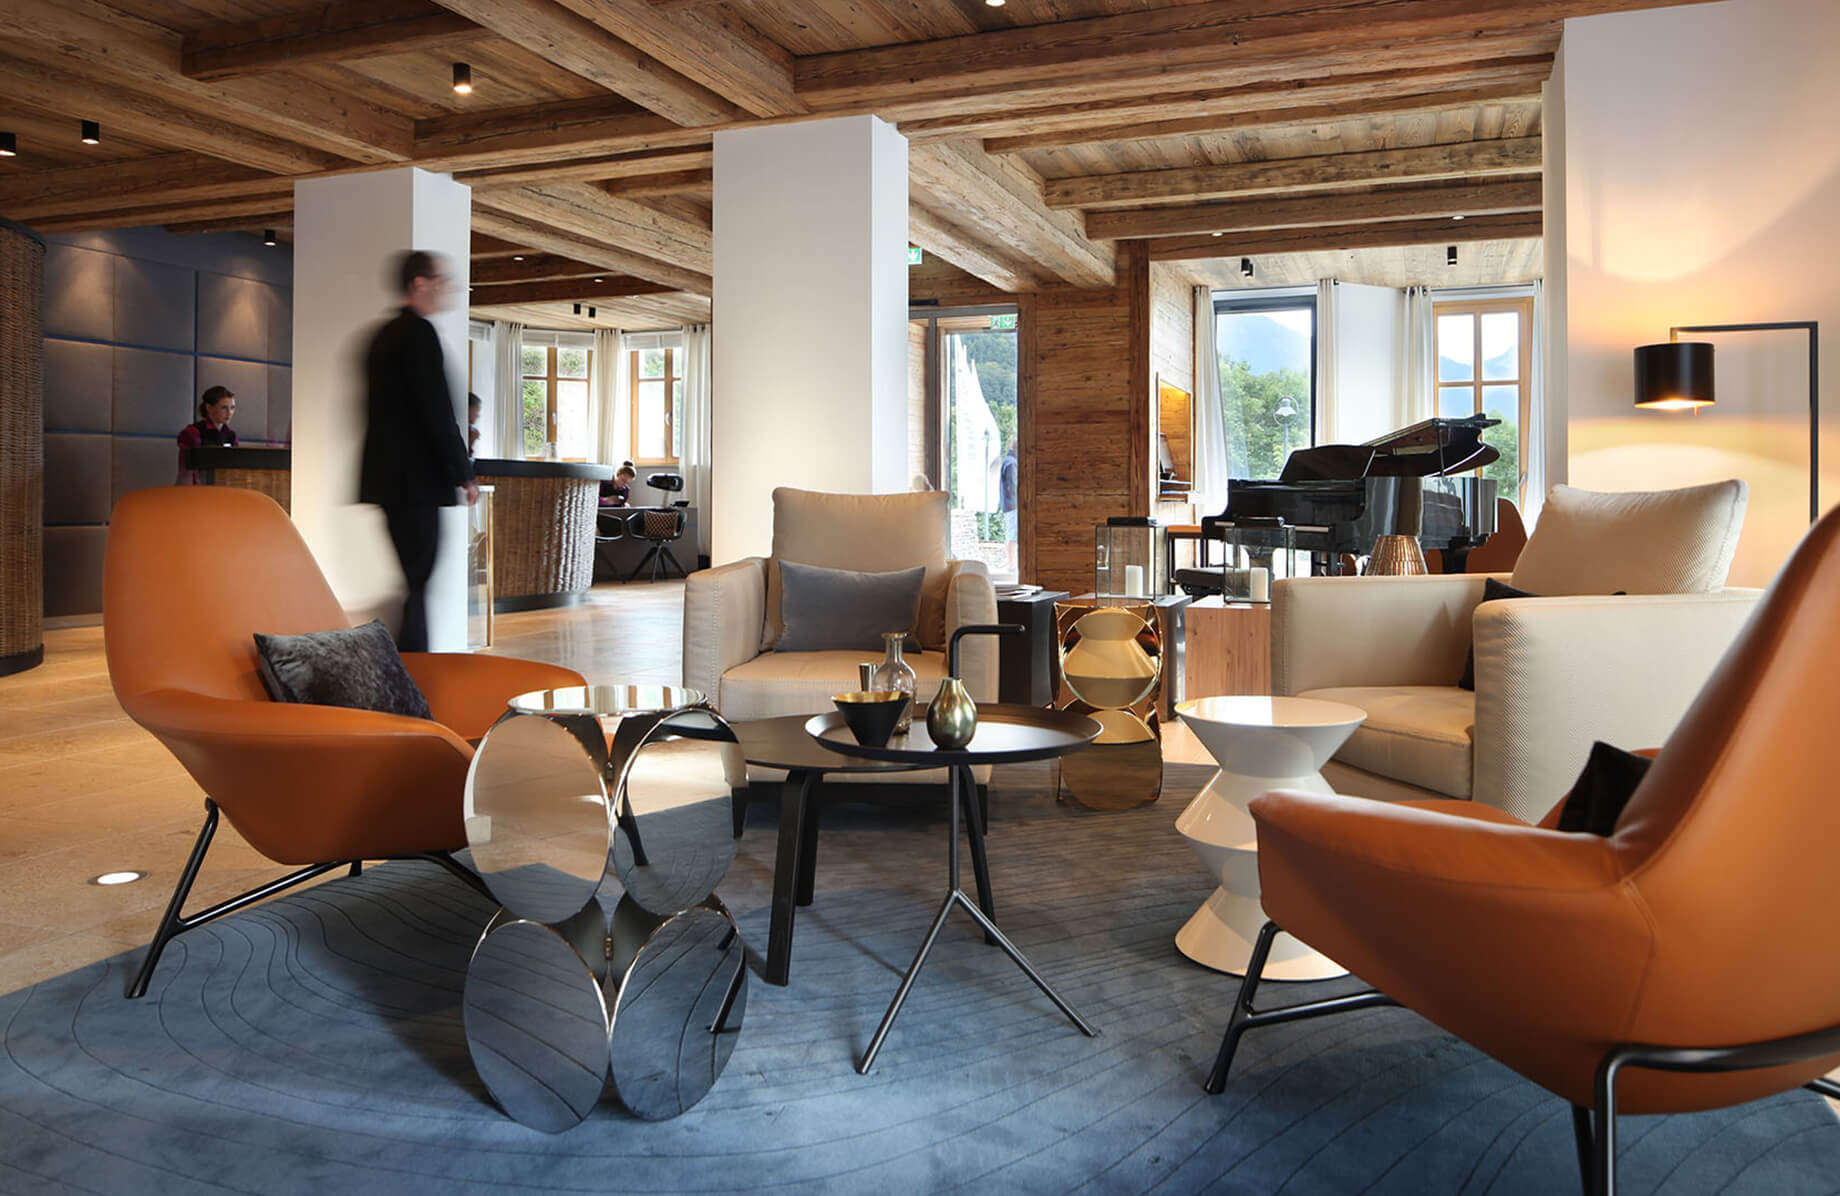 Aufnahme in der hellen Lobby des Hotels Das Tegernsee, die modern und gemütlich eingerichtet ist mit zwei braunen Lounge-Stühlen und zwei grauen Ledersesseln in der Raummitte.